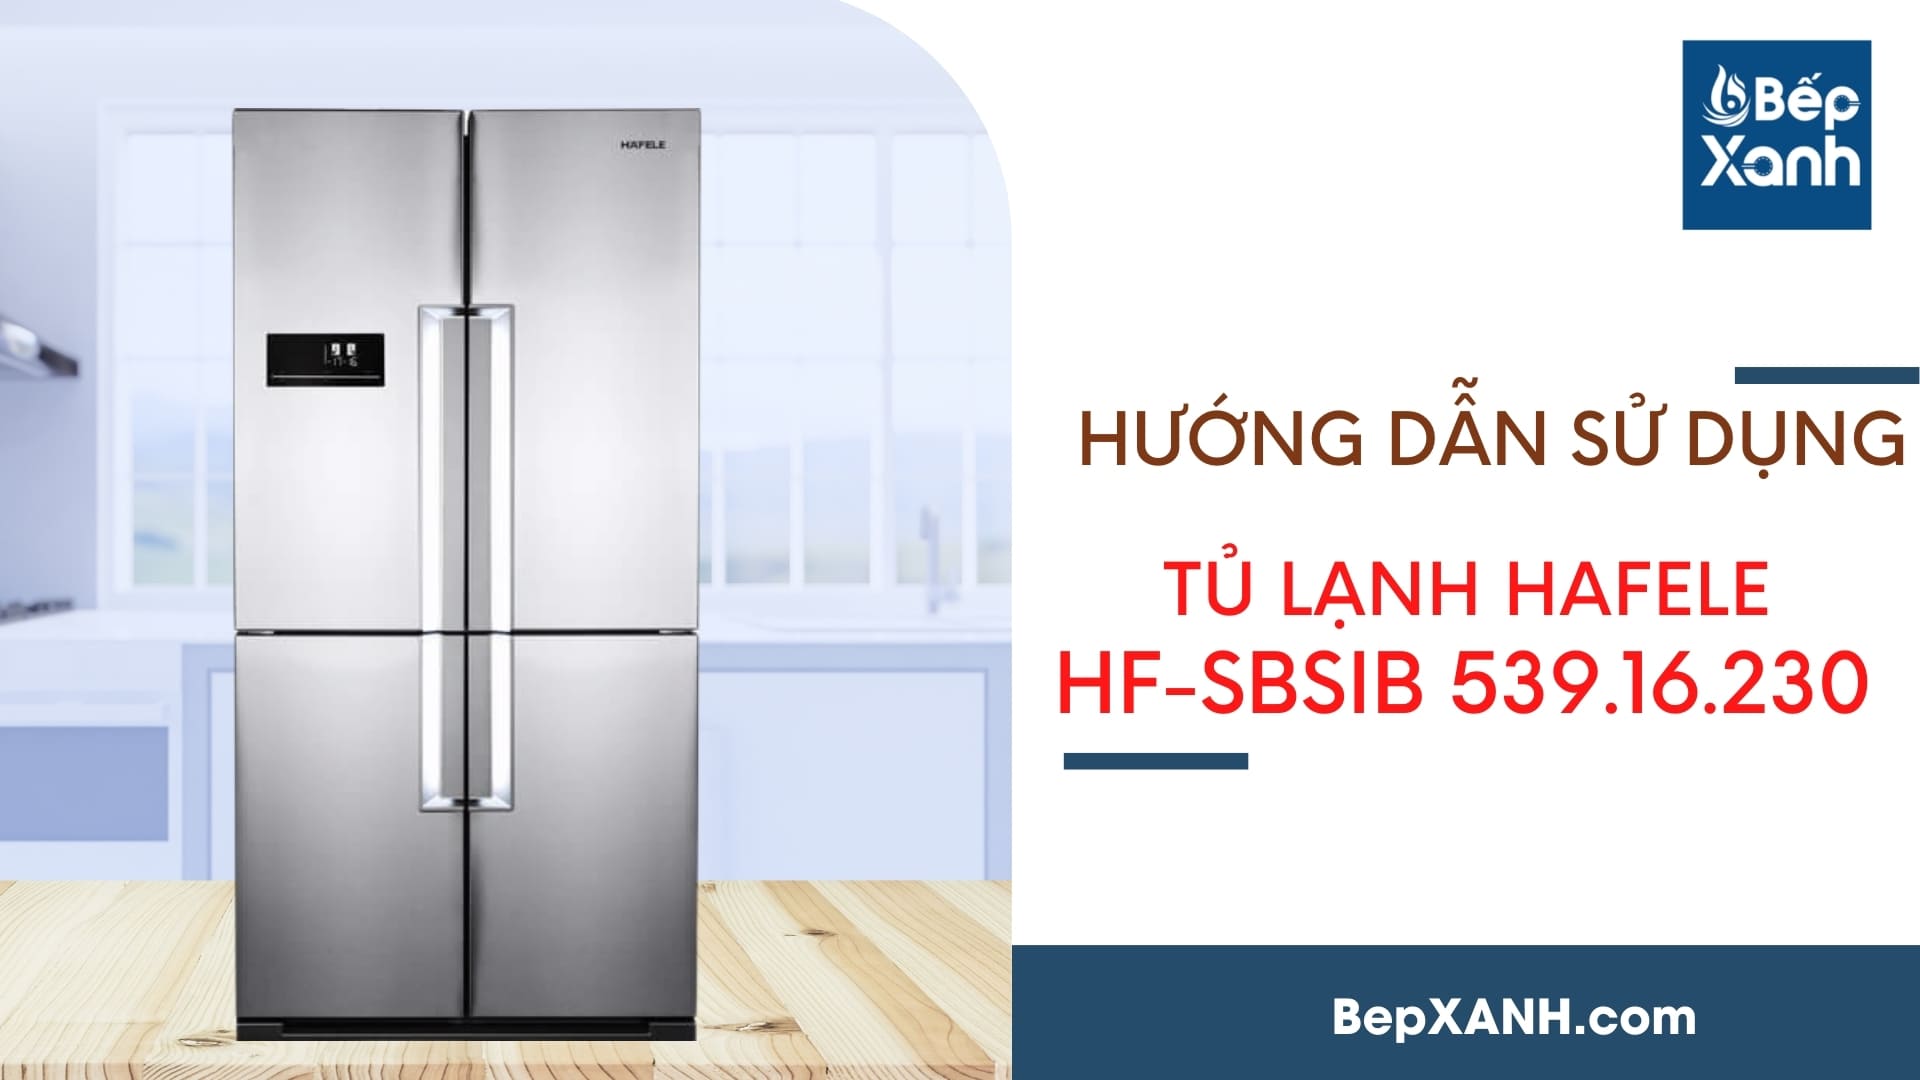 Hướng dẫn sử dụng tủ lạnh Hafele HF-SBSIB 539.16.230